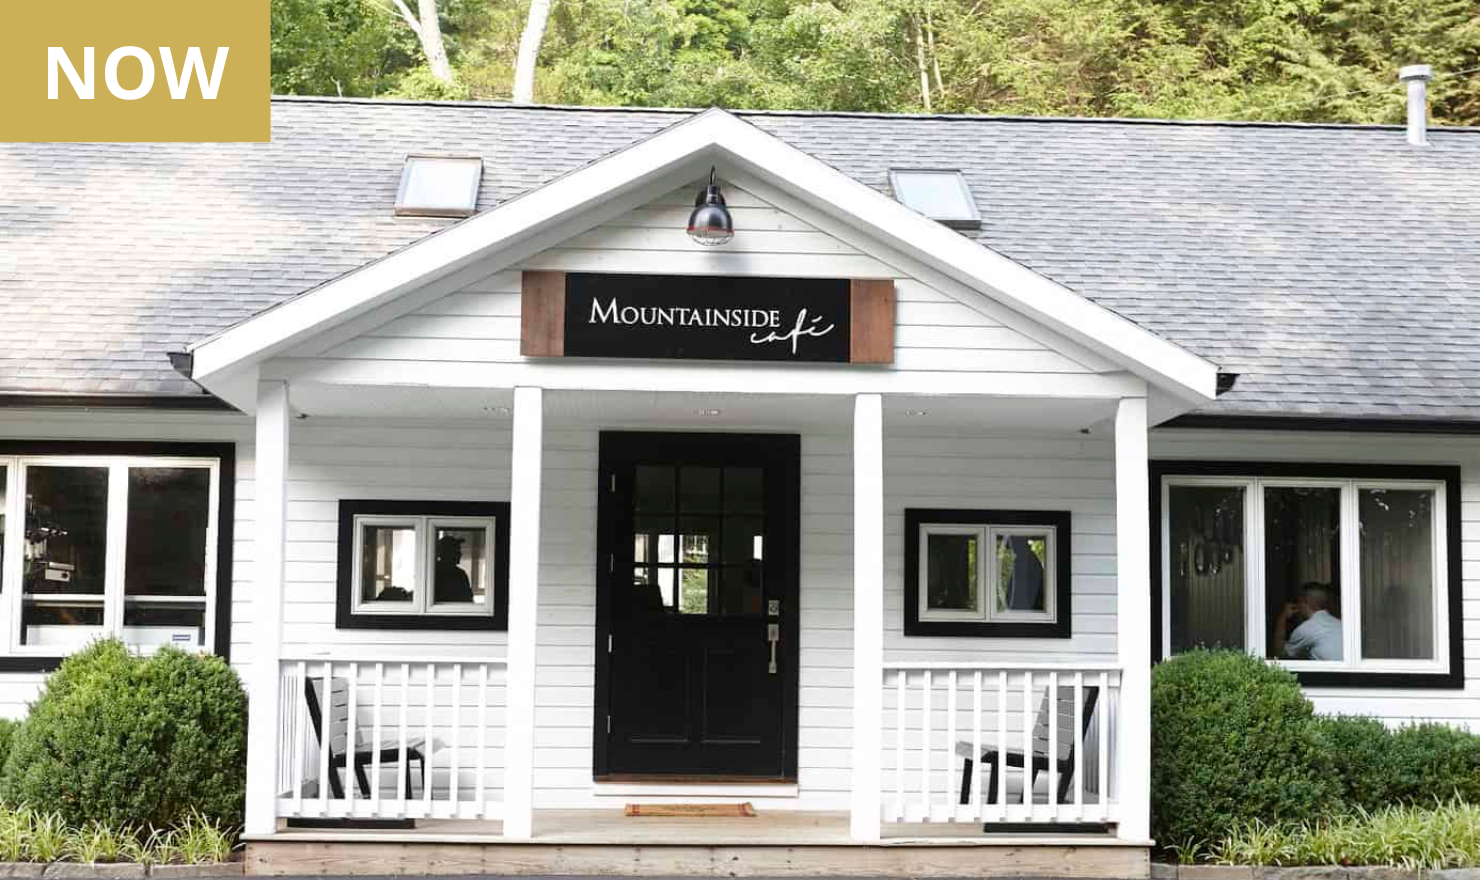 NOW: Mountainside Café